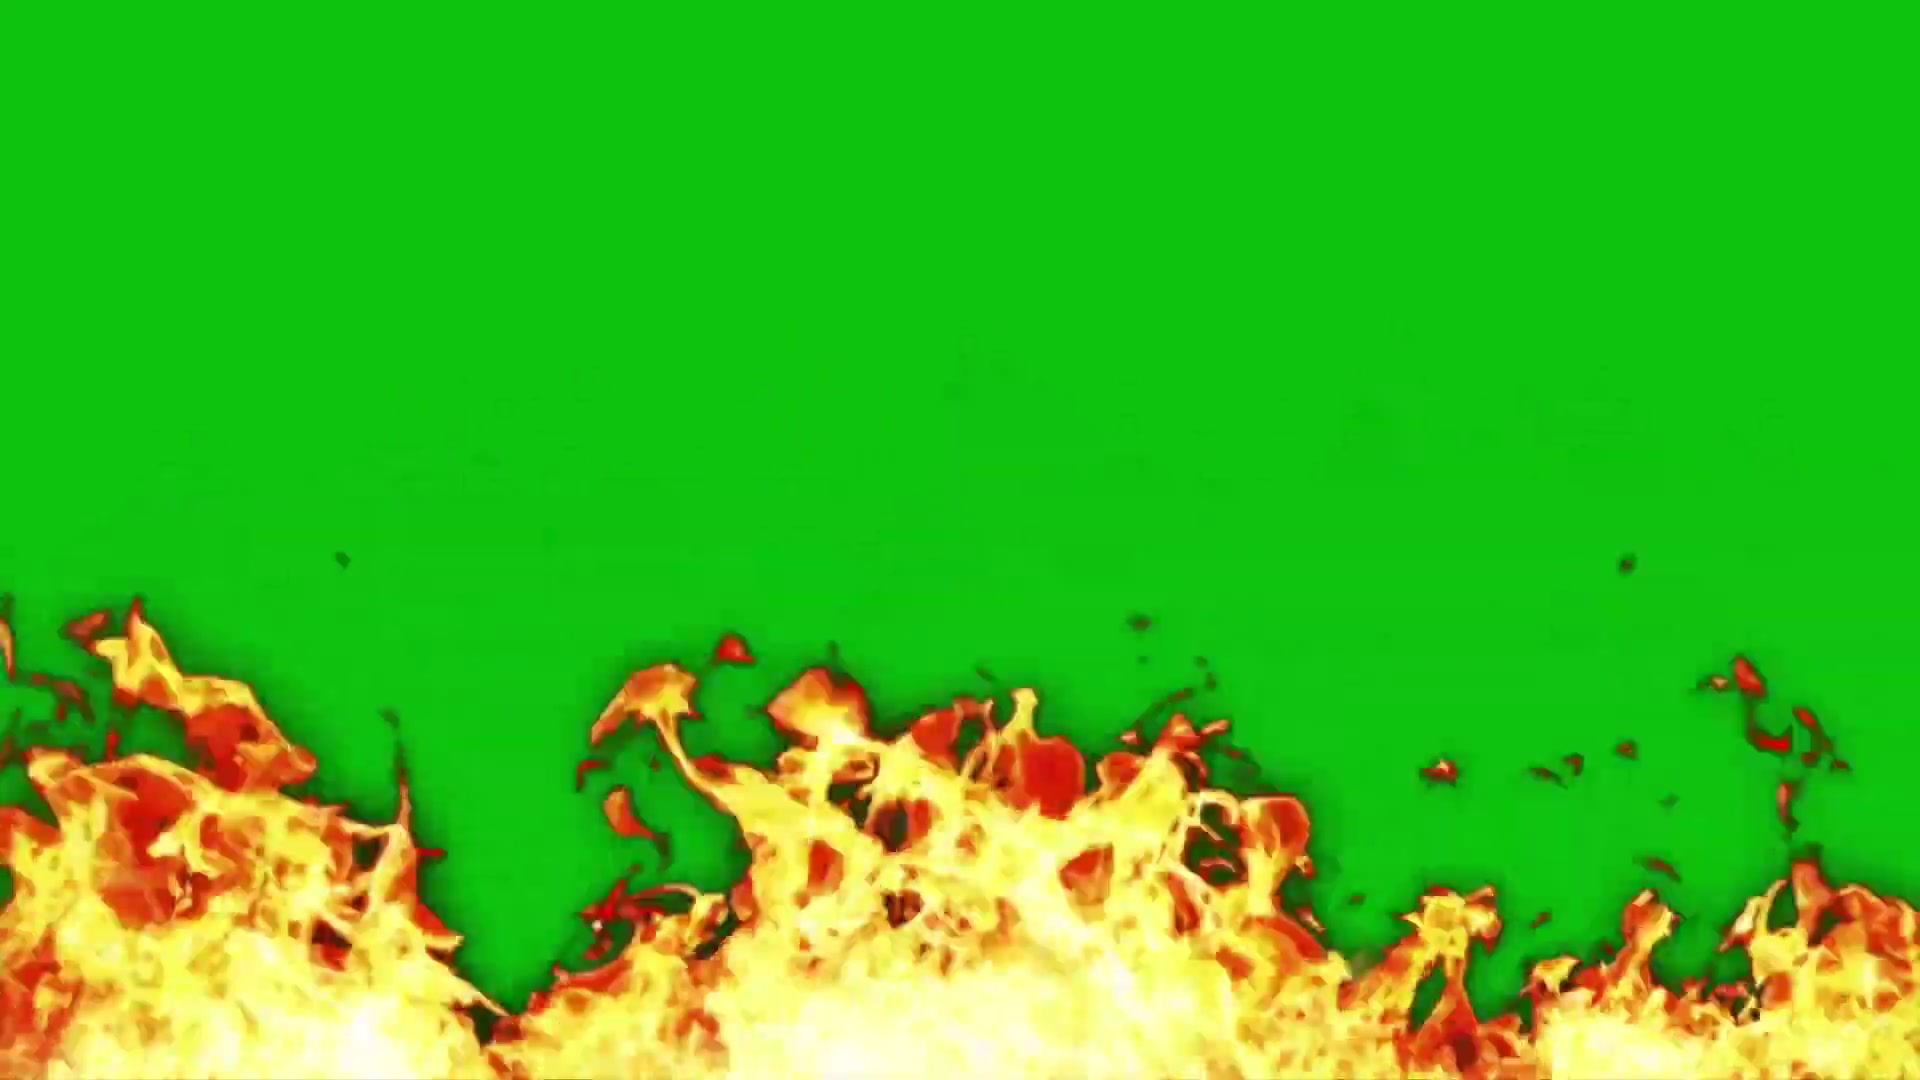 在白色背景的绿色火火焰 库存图片. 图片 包括有 能源, 燃料, 发光, 气体, 圈子, 蓝色, 国内 - 104655425